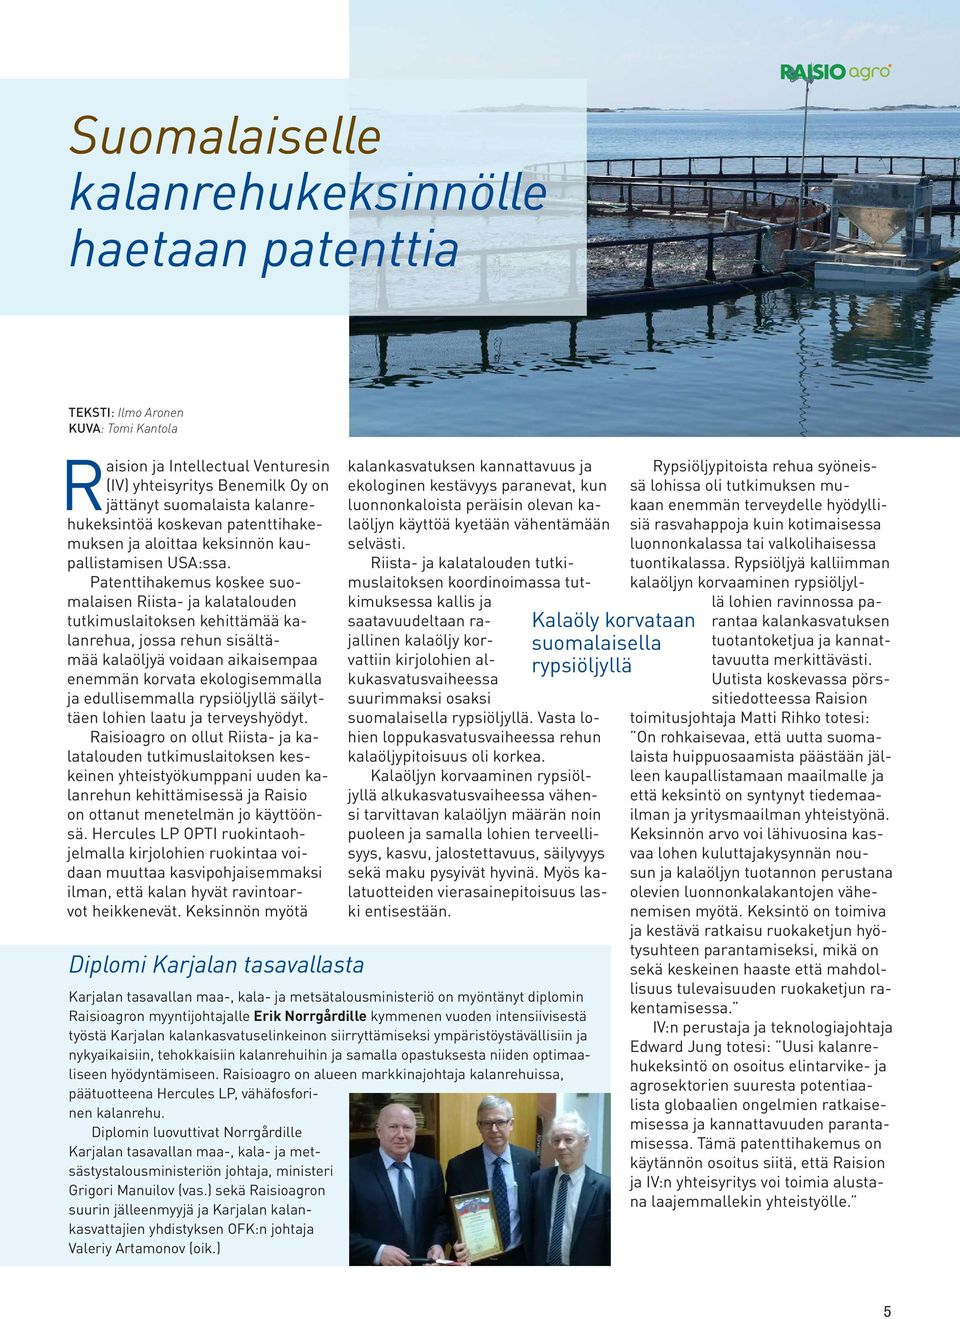 Patenttihakemus koskee suomalaisen Riista- ja kalatalouden tutkimuslaitoksen kehittämää kalanrehua, jossa rehun sisältämää kalaöljyä voidaan aikaisempaa enemmän korvata ekologisemmalla ja